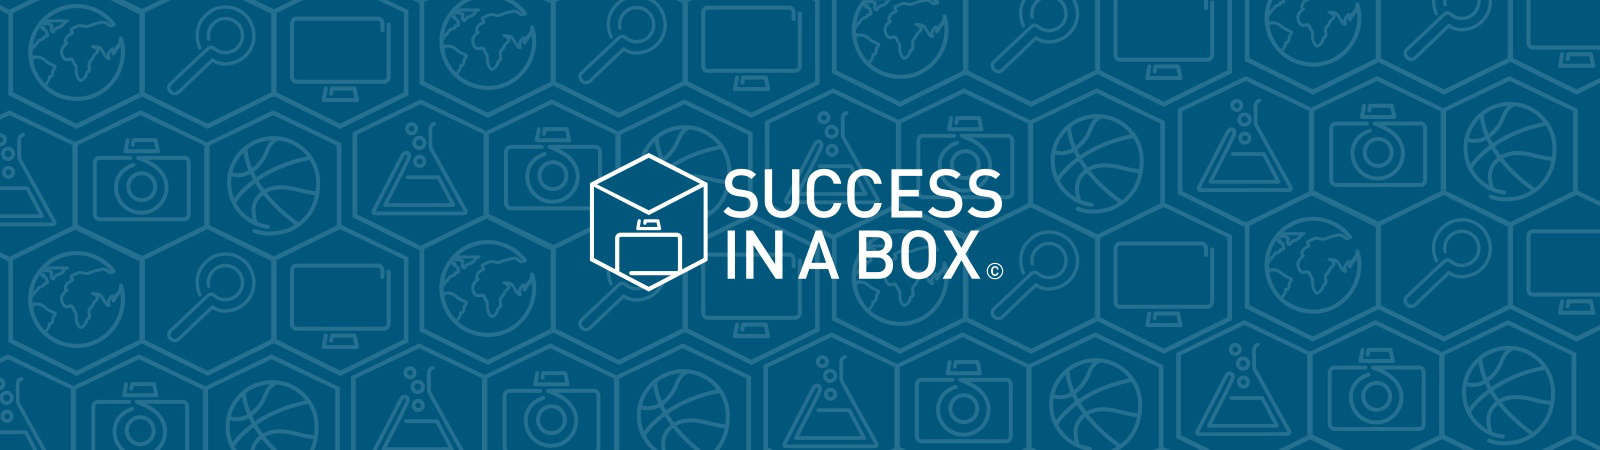 Success in a box